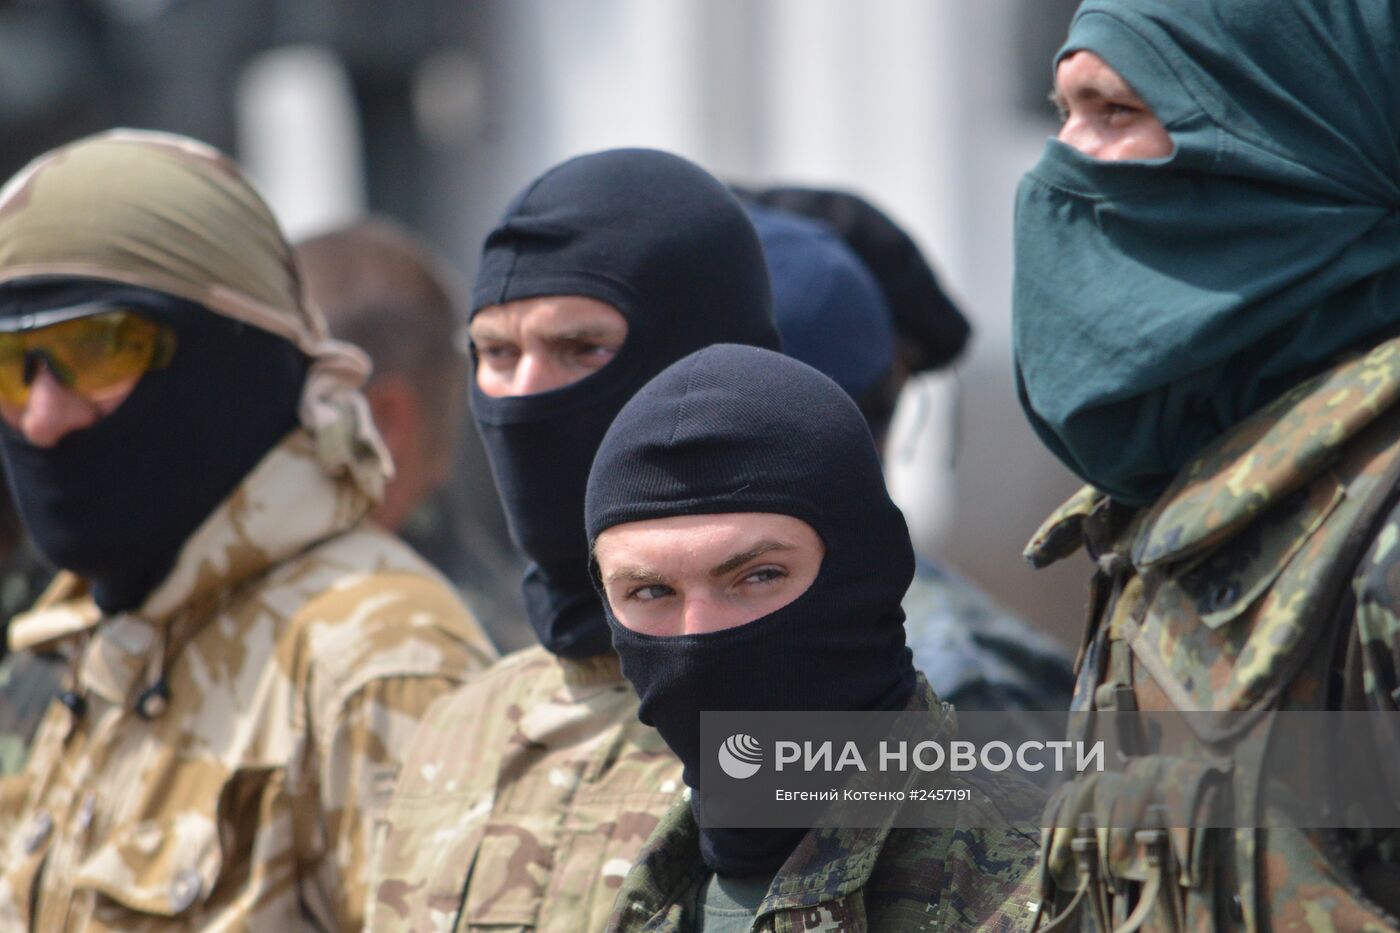 Усиление мер безопасности у Верховной Рады Украины в Киеве